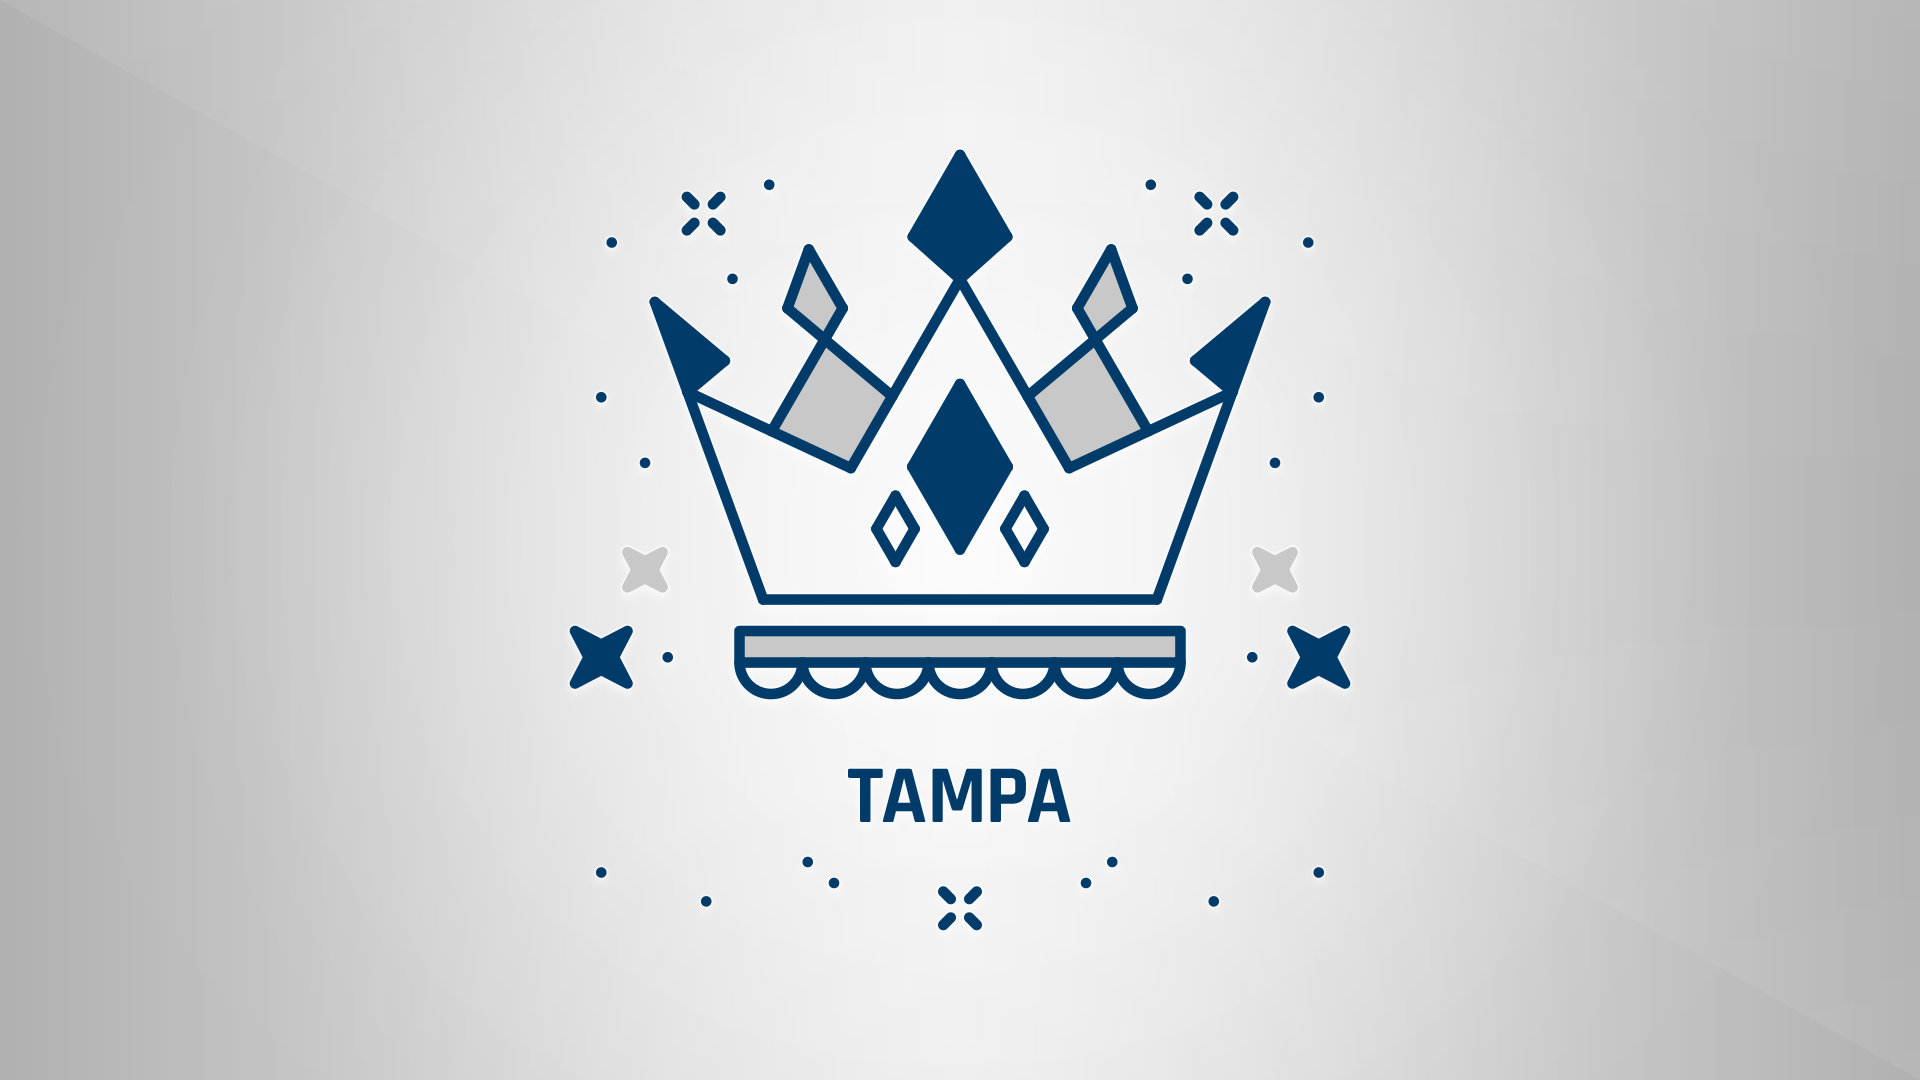 King of Tampa